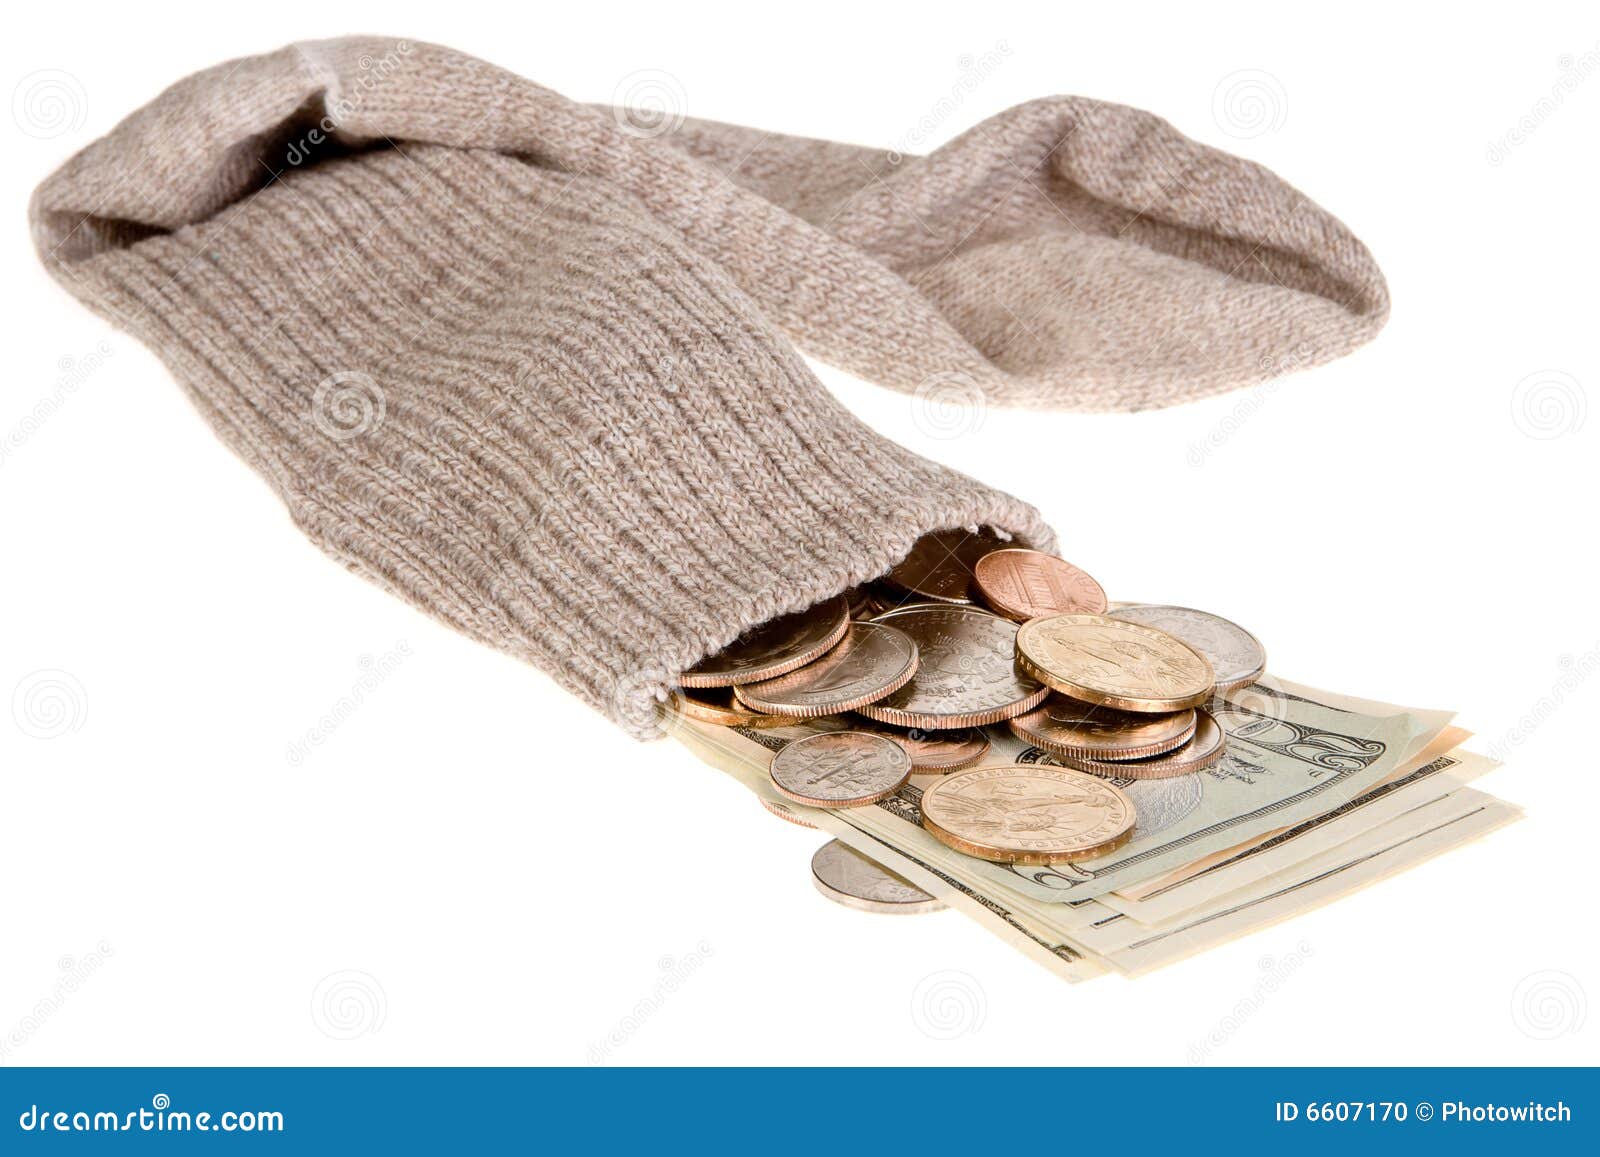 Geld in Socken verstecken ist eine unsichere - Lizenzfreies Foto #23506824